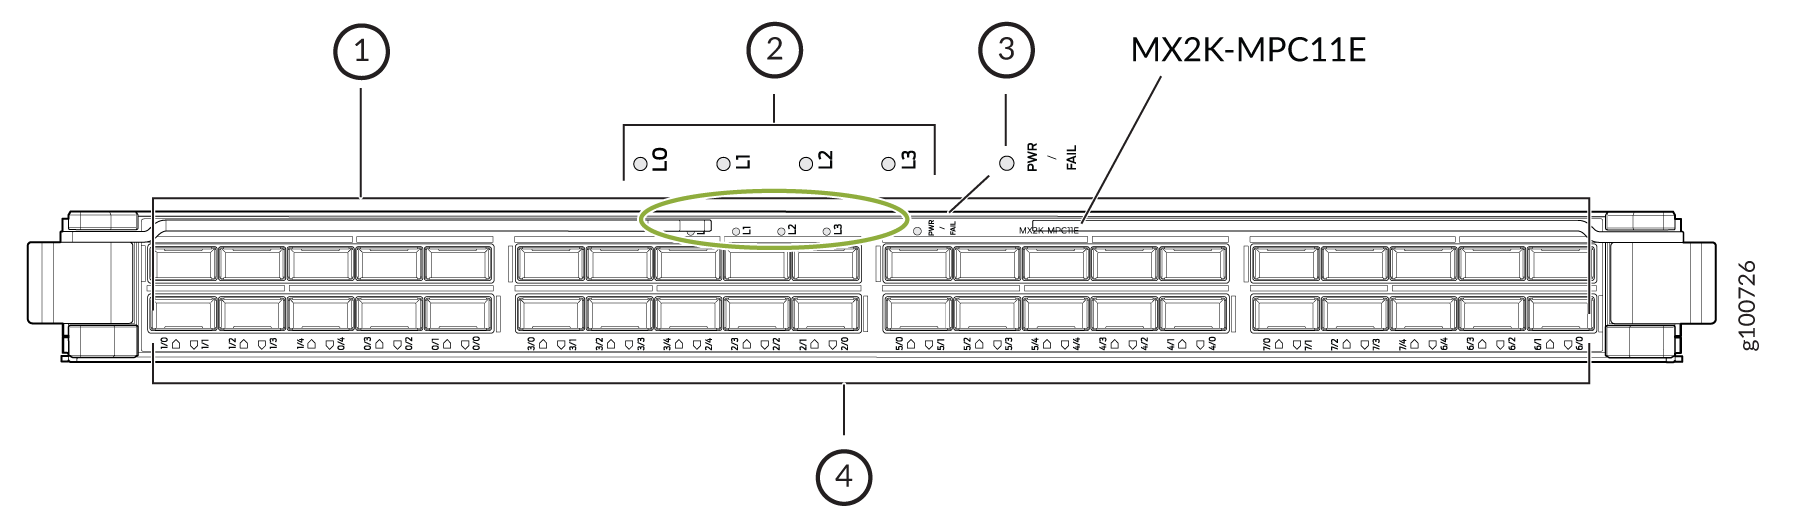 MX2K-MPC11E Modular Port Concentrator